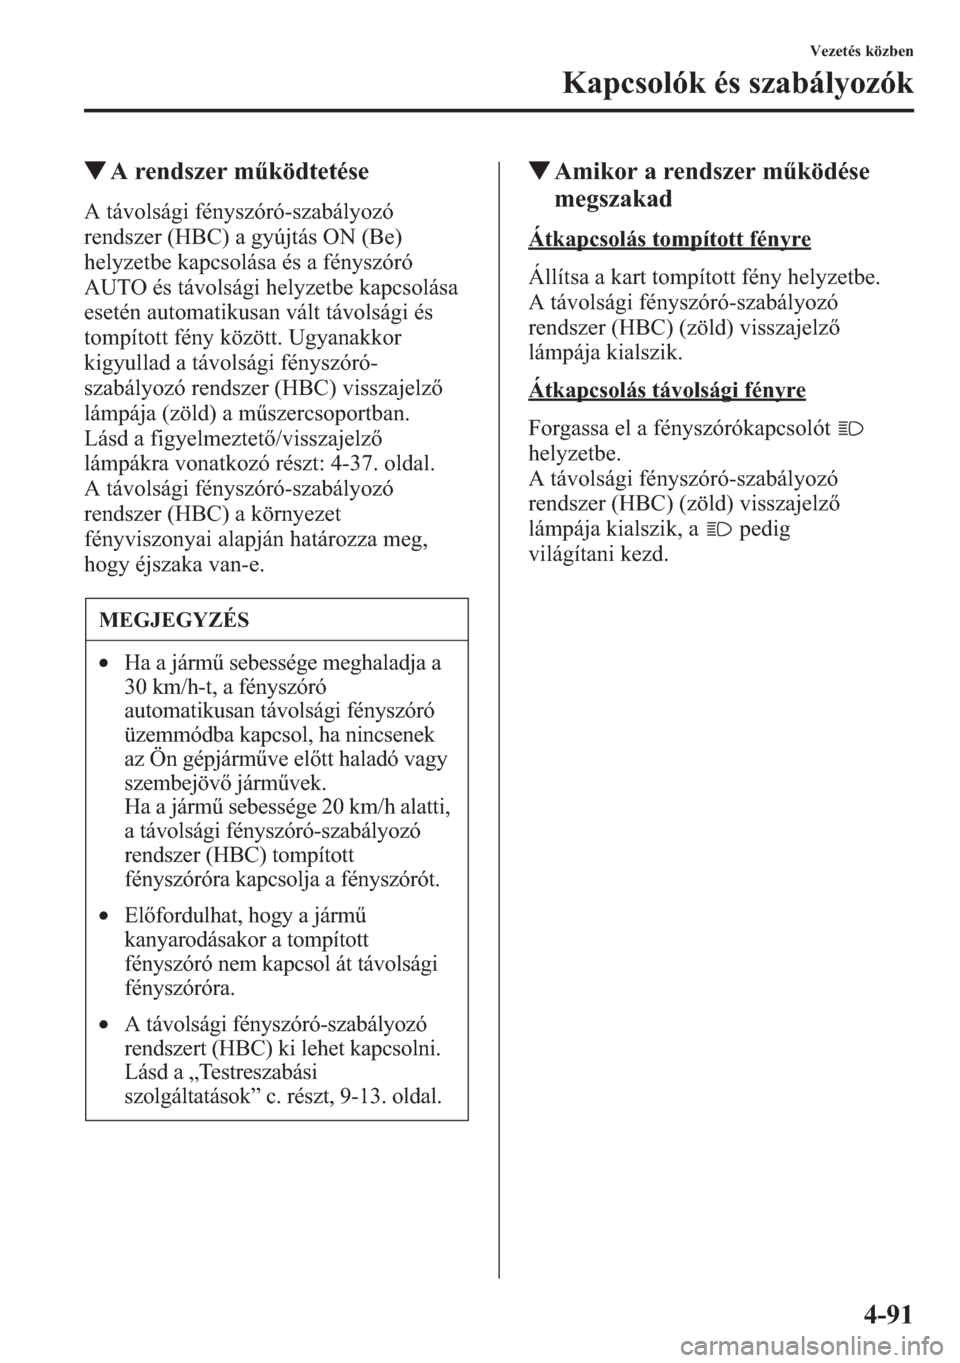 MAZDA MODEL CX-5 2013  Kezelési útmutató (in Hungarian) 4-91
Vezetés közben
Kapcsolók és szabályozók
tA rendszer mködtetése
A távolsági fényszóró-szabályozó 
rendszer (HBC) a gyújtás ON (Be) 
helyzetbe kapcsolása és a fényszóró 
AUTO